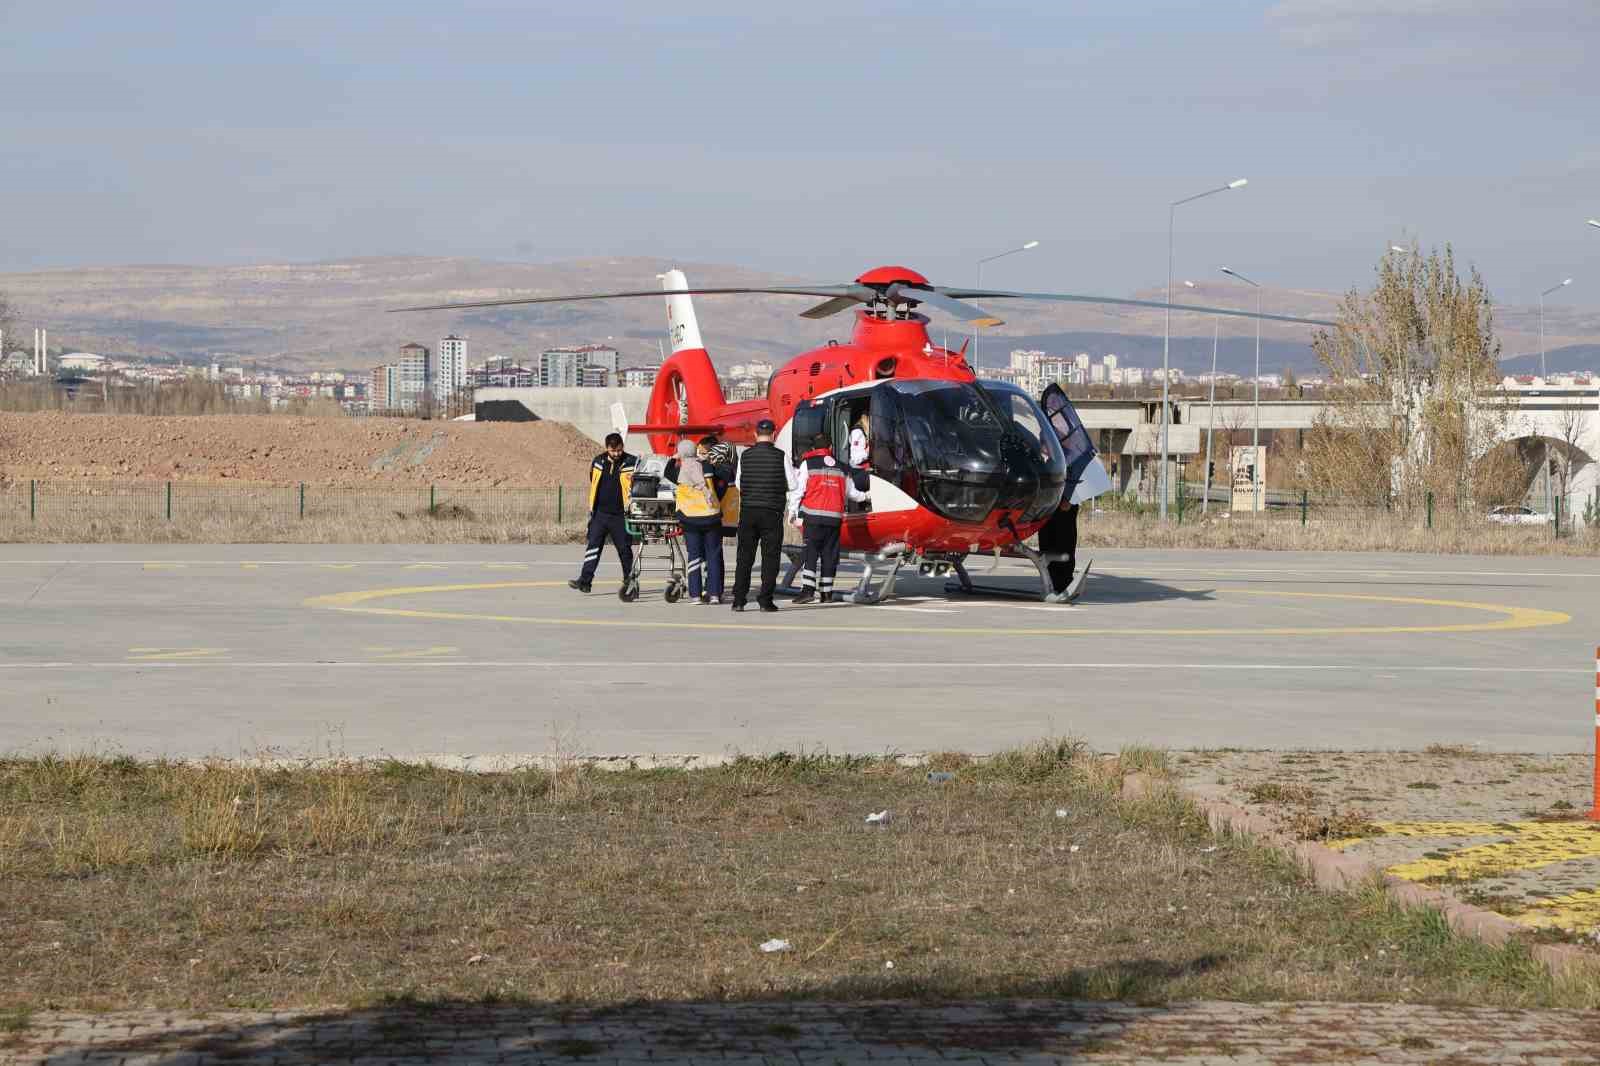 Sivas’a yeniden Ambulans helikopter  tahsis edildi
